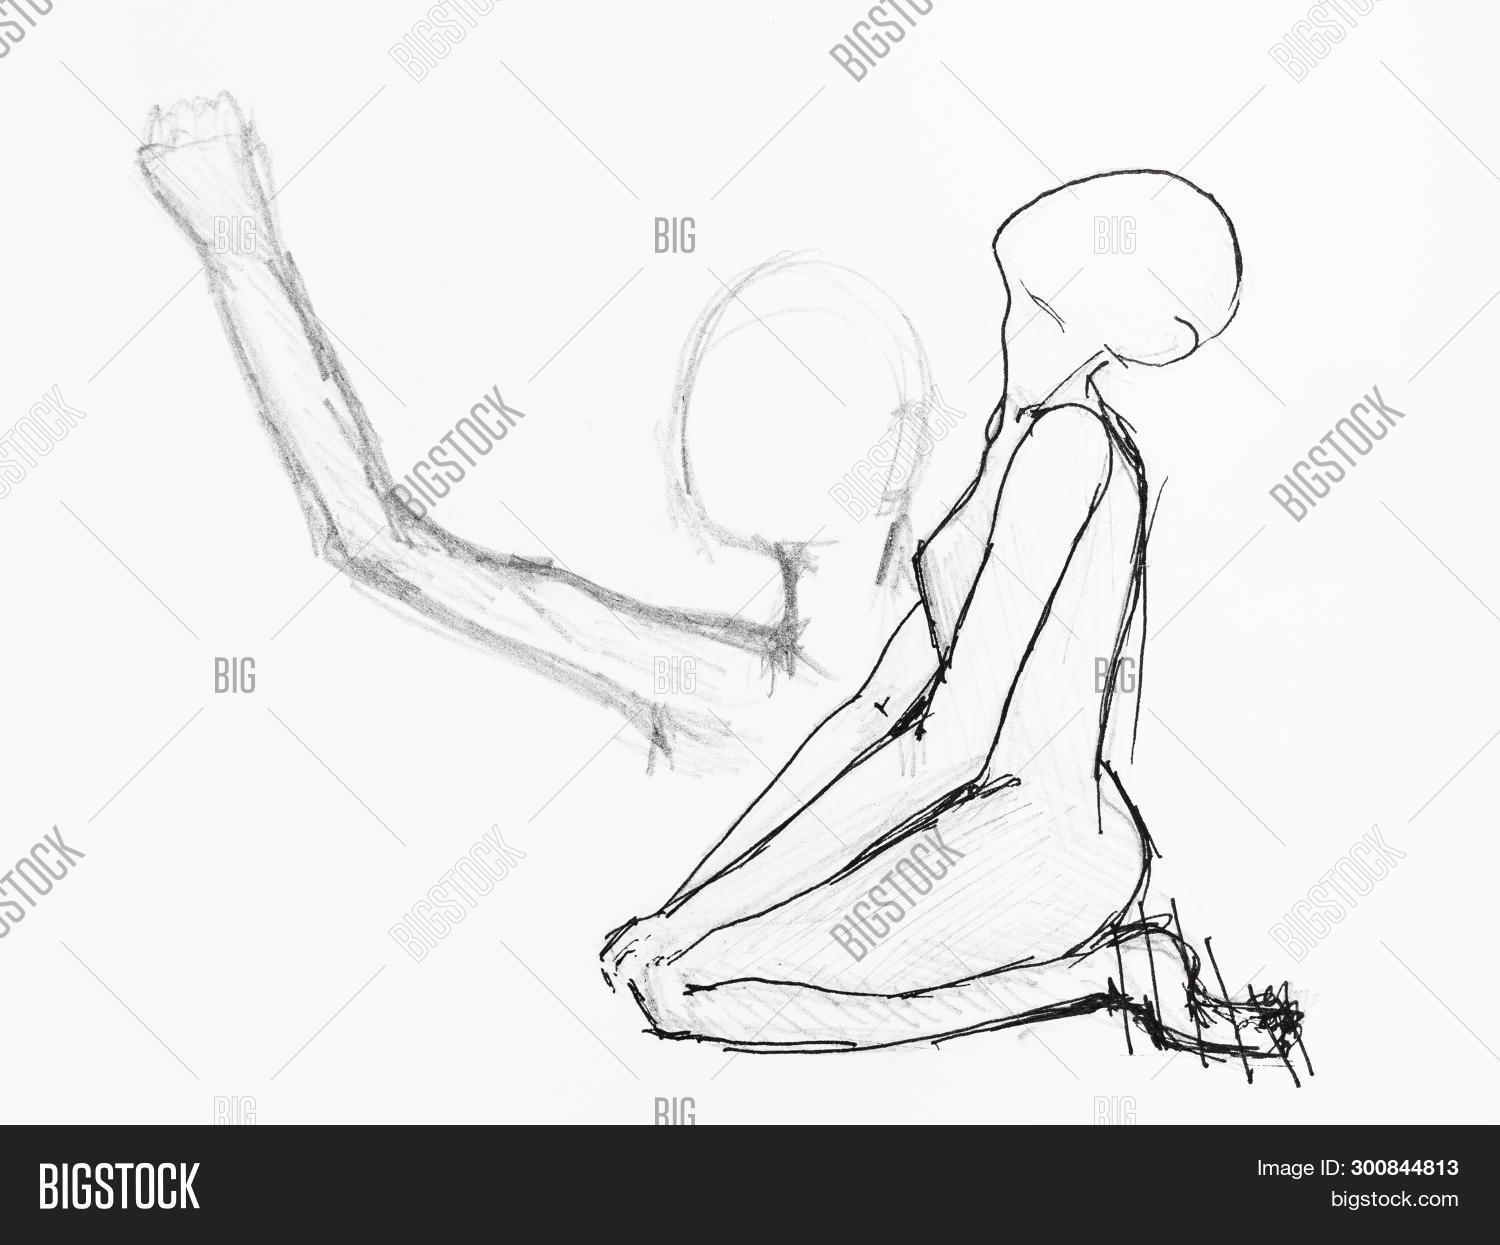 Человек на коленях рисунок карандашом - 65 фото